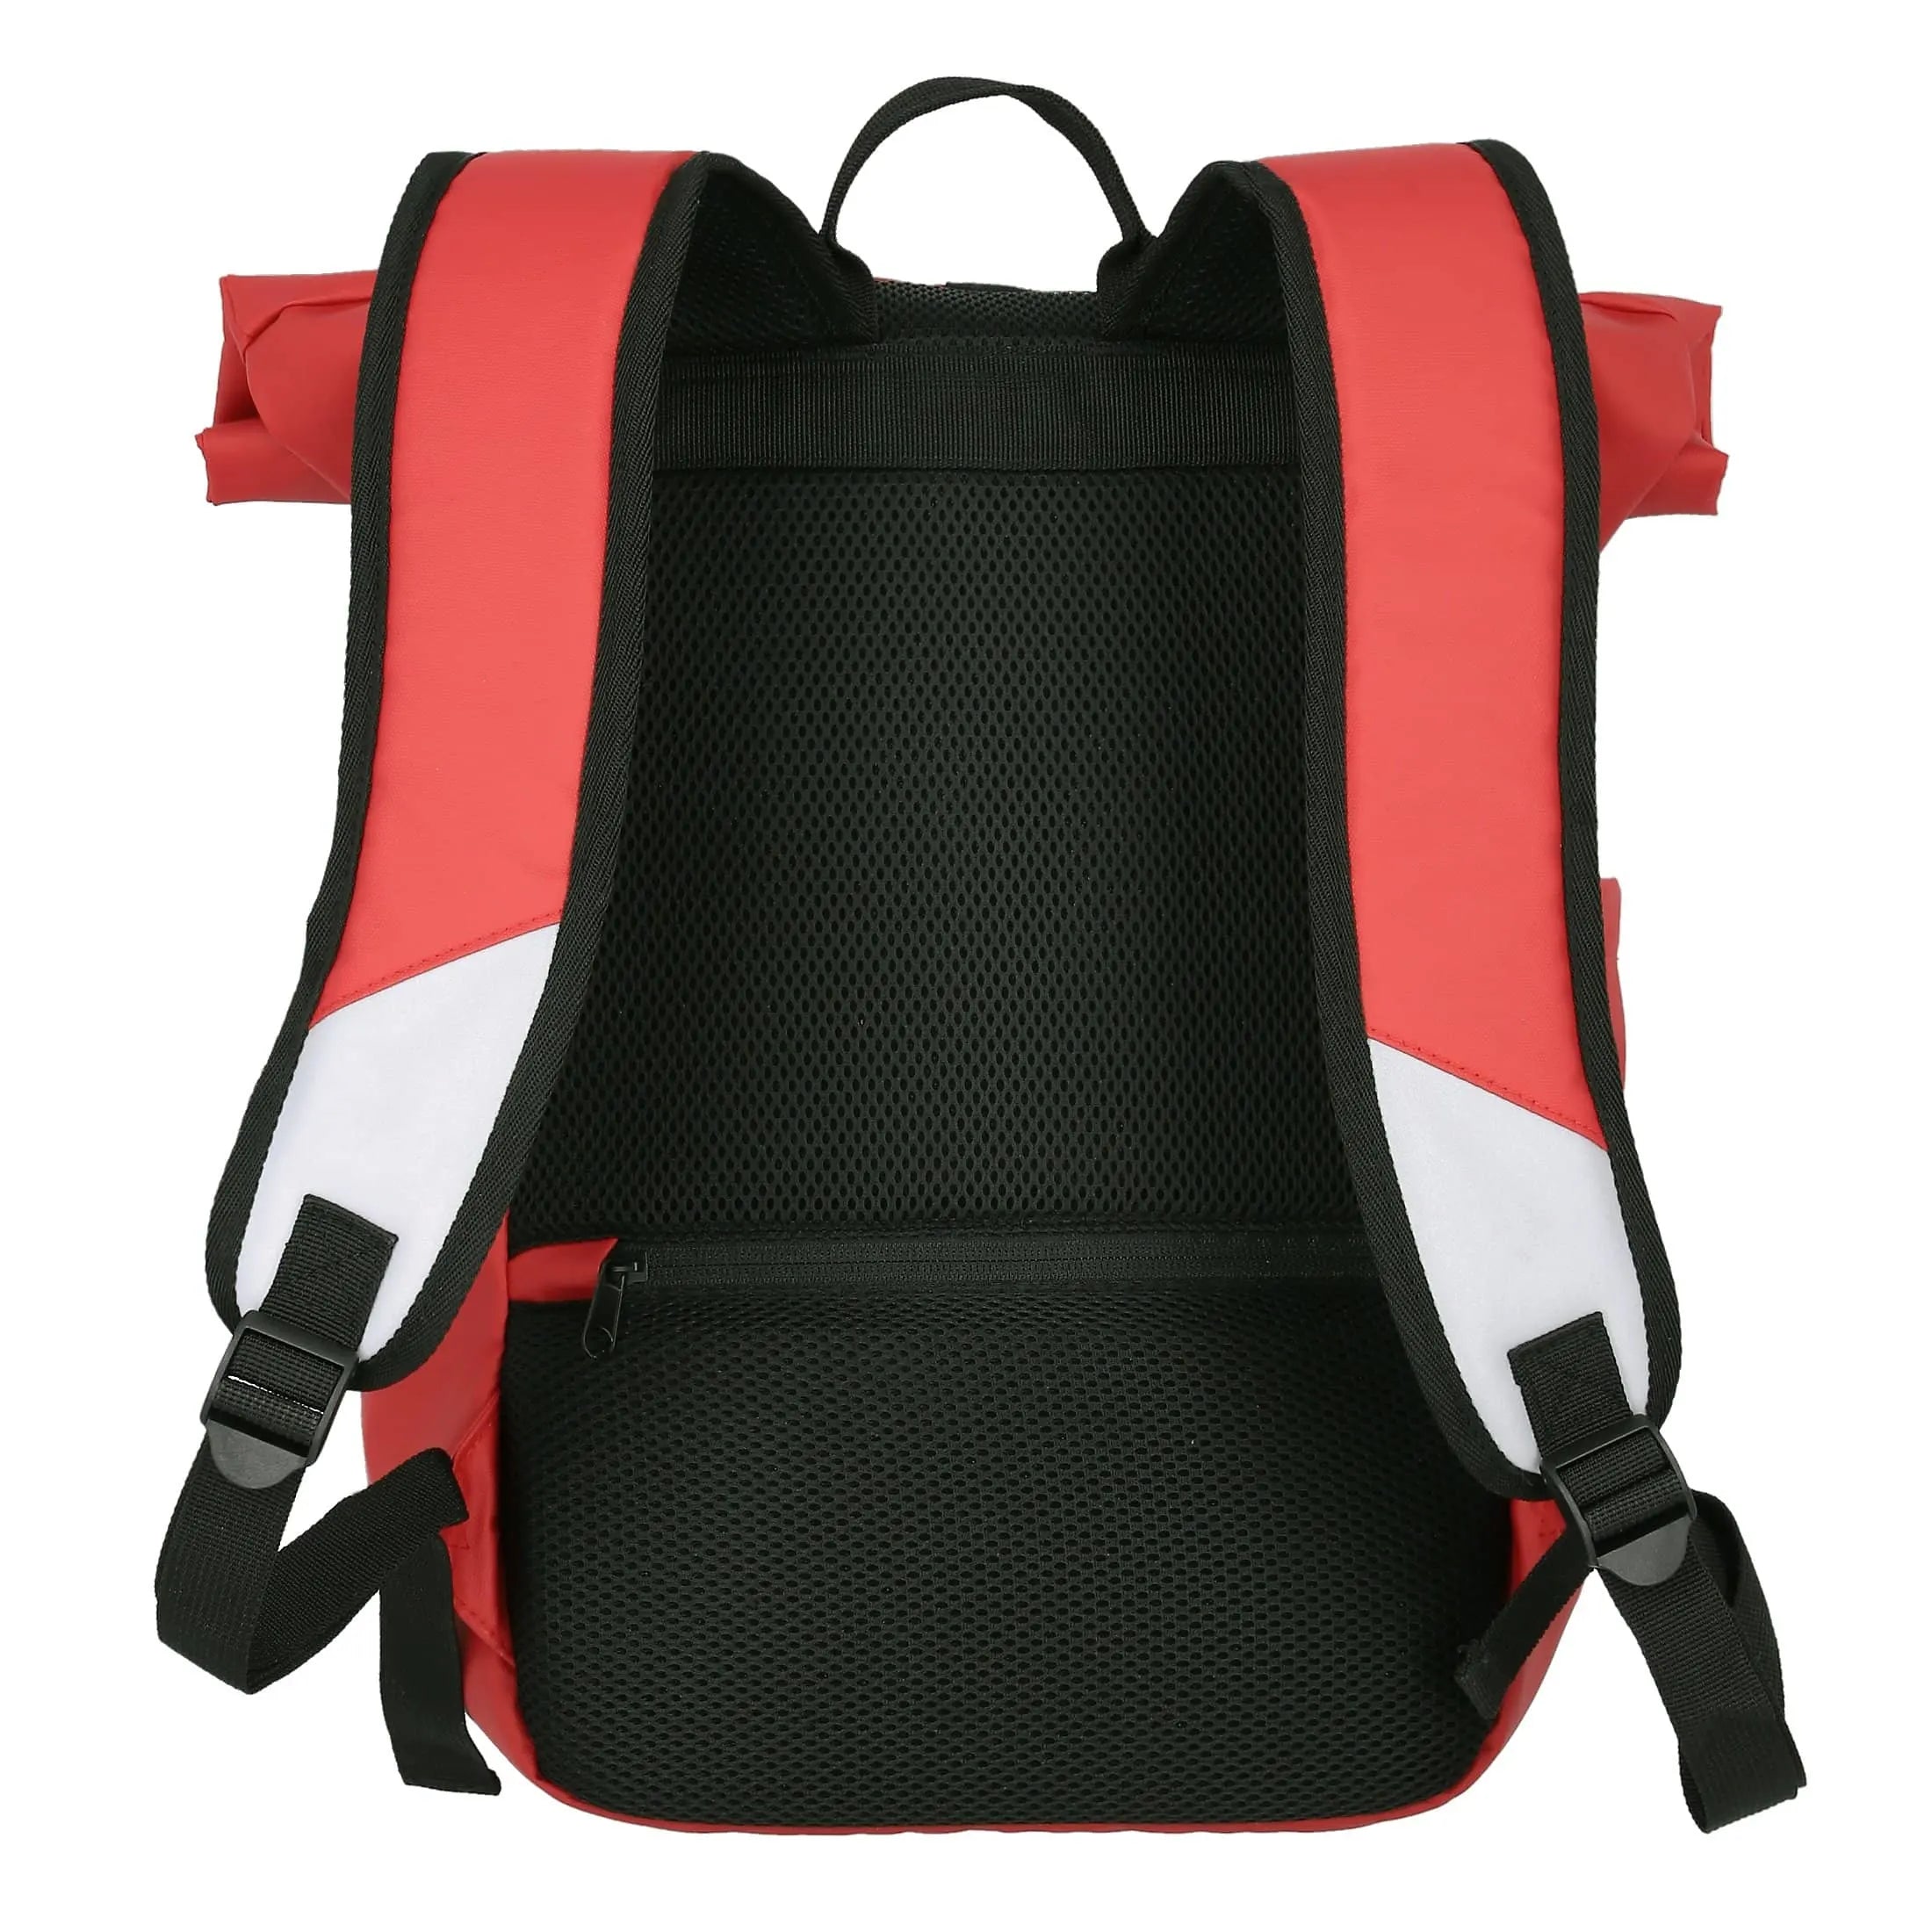 Bâche pour sac à dos enroulable Travelite Basics 48 cm - Corail